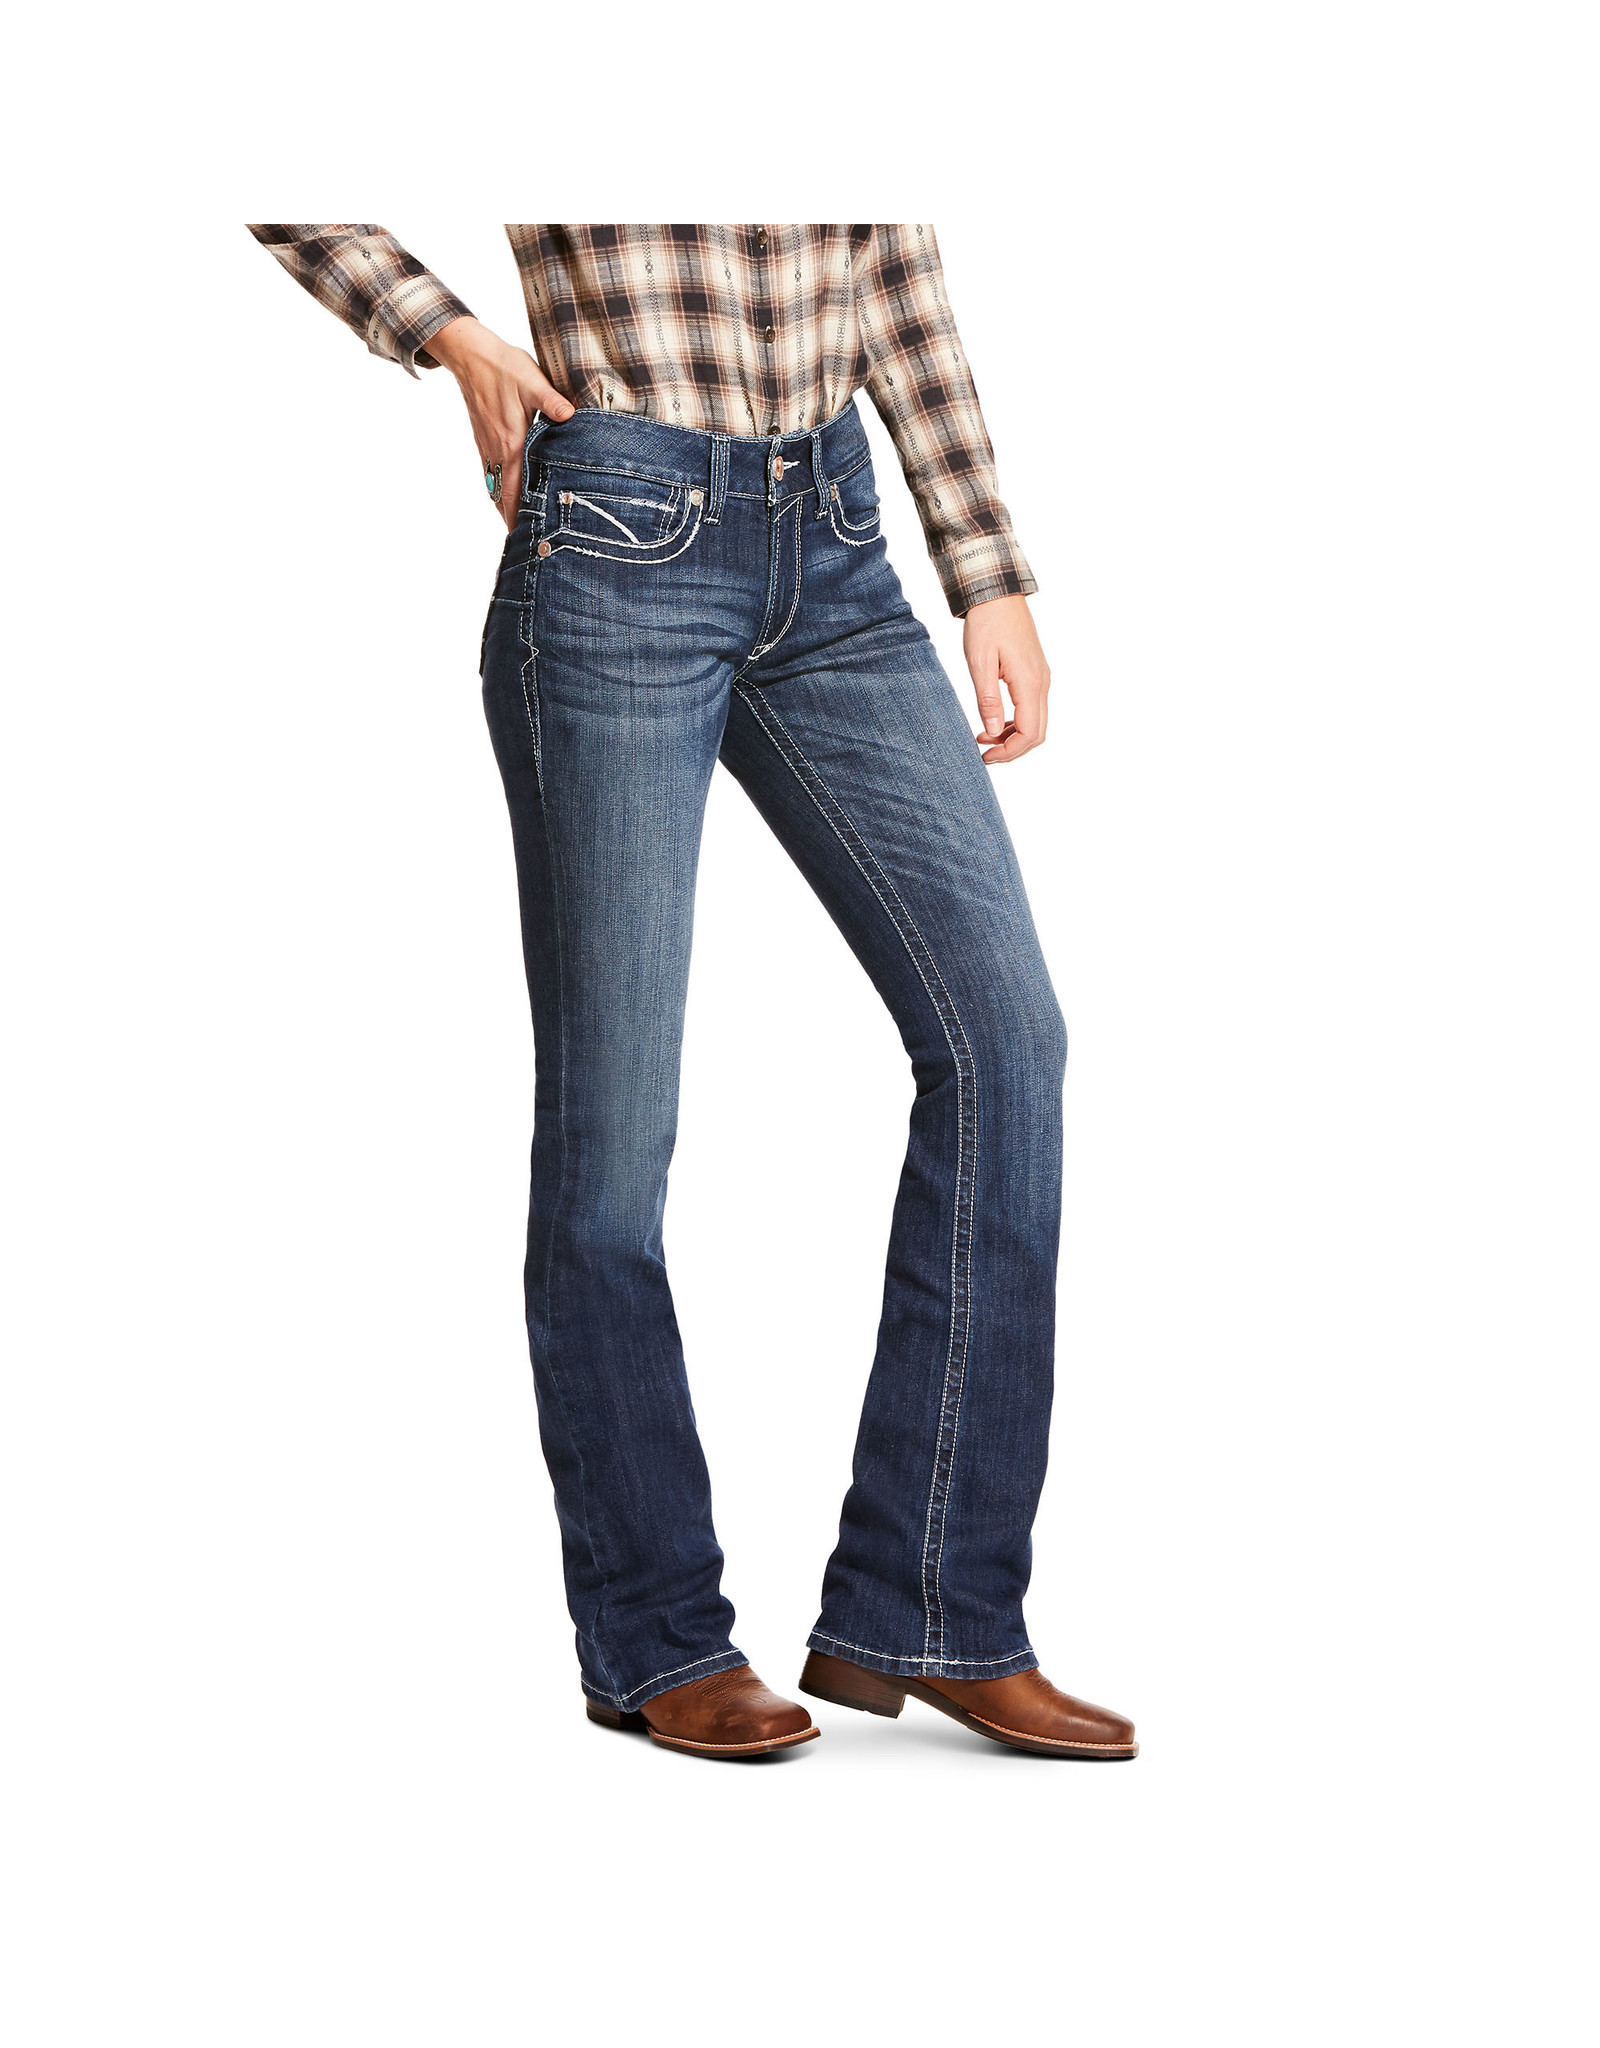 Ariat Women's PR 10028931 Bootcut Jeans